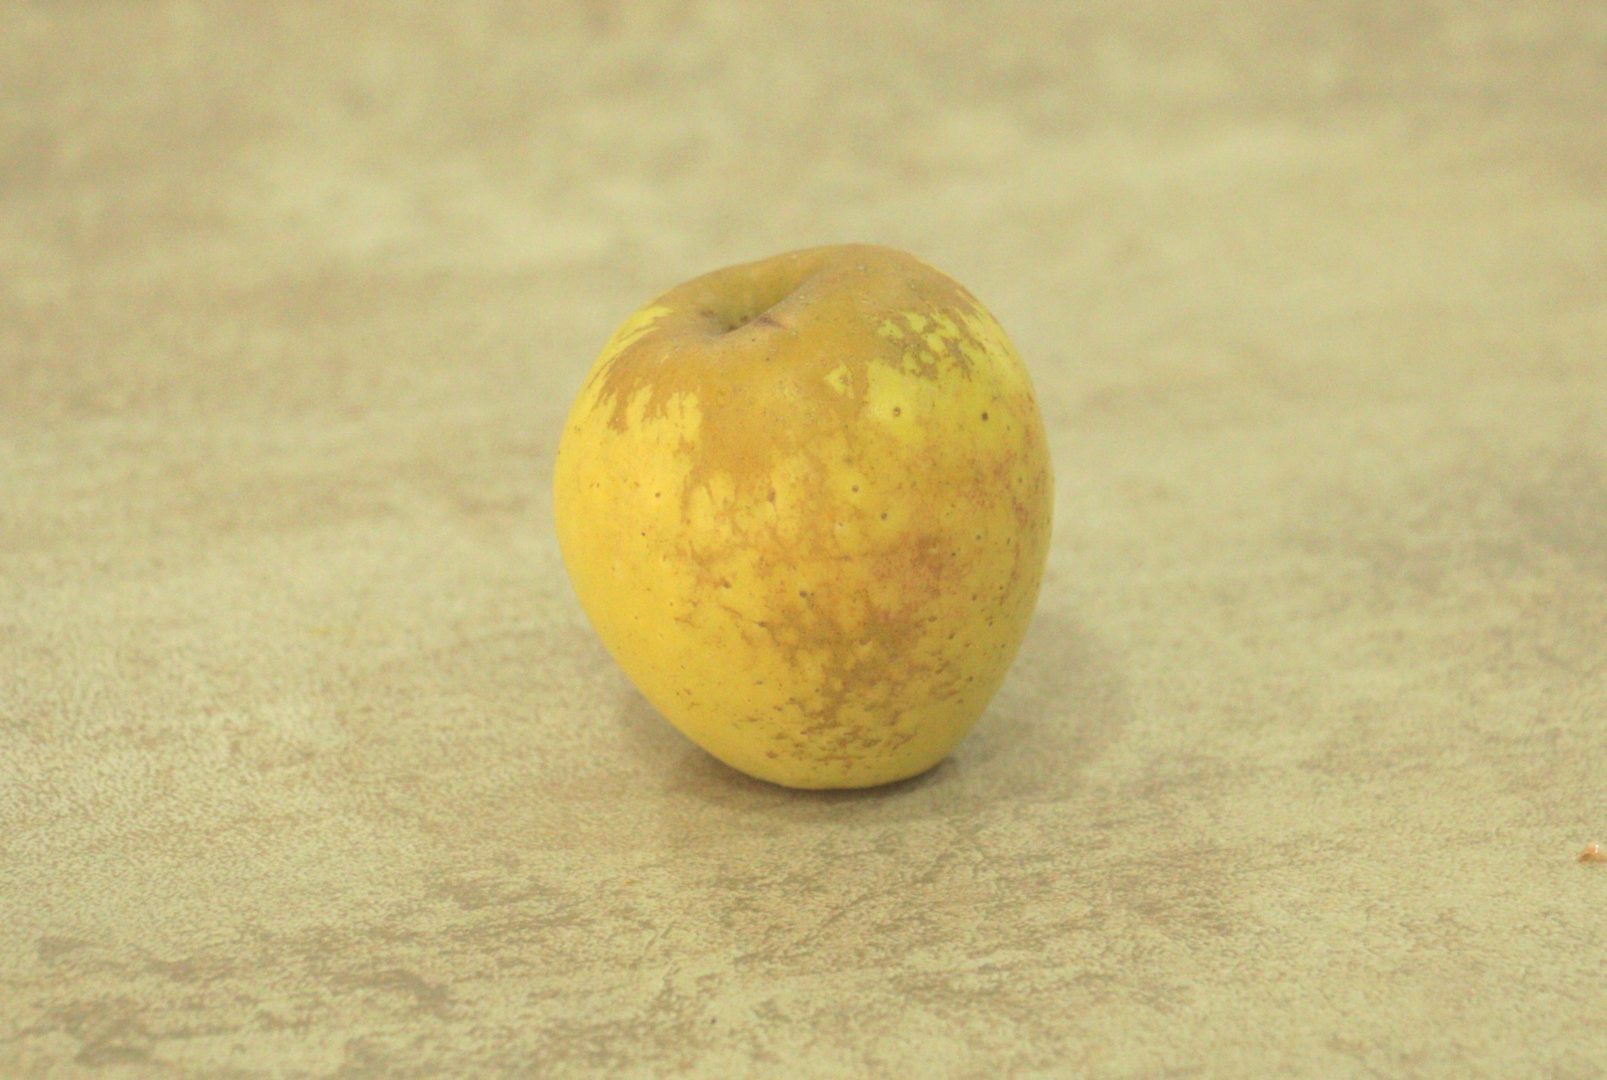 Ржавая сетка на яблоке - последствия мучнистой роср